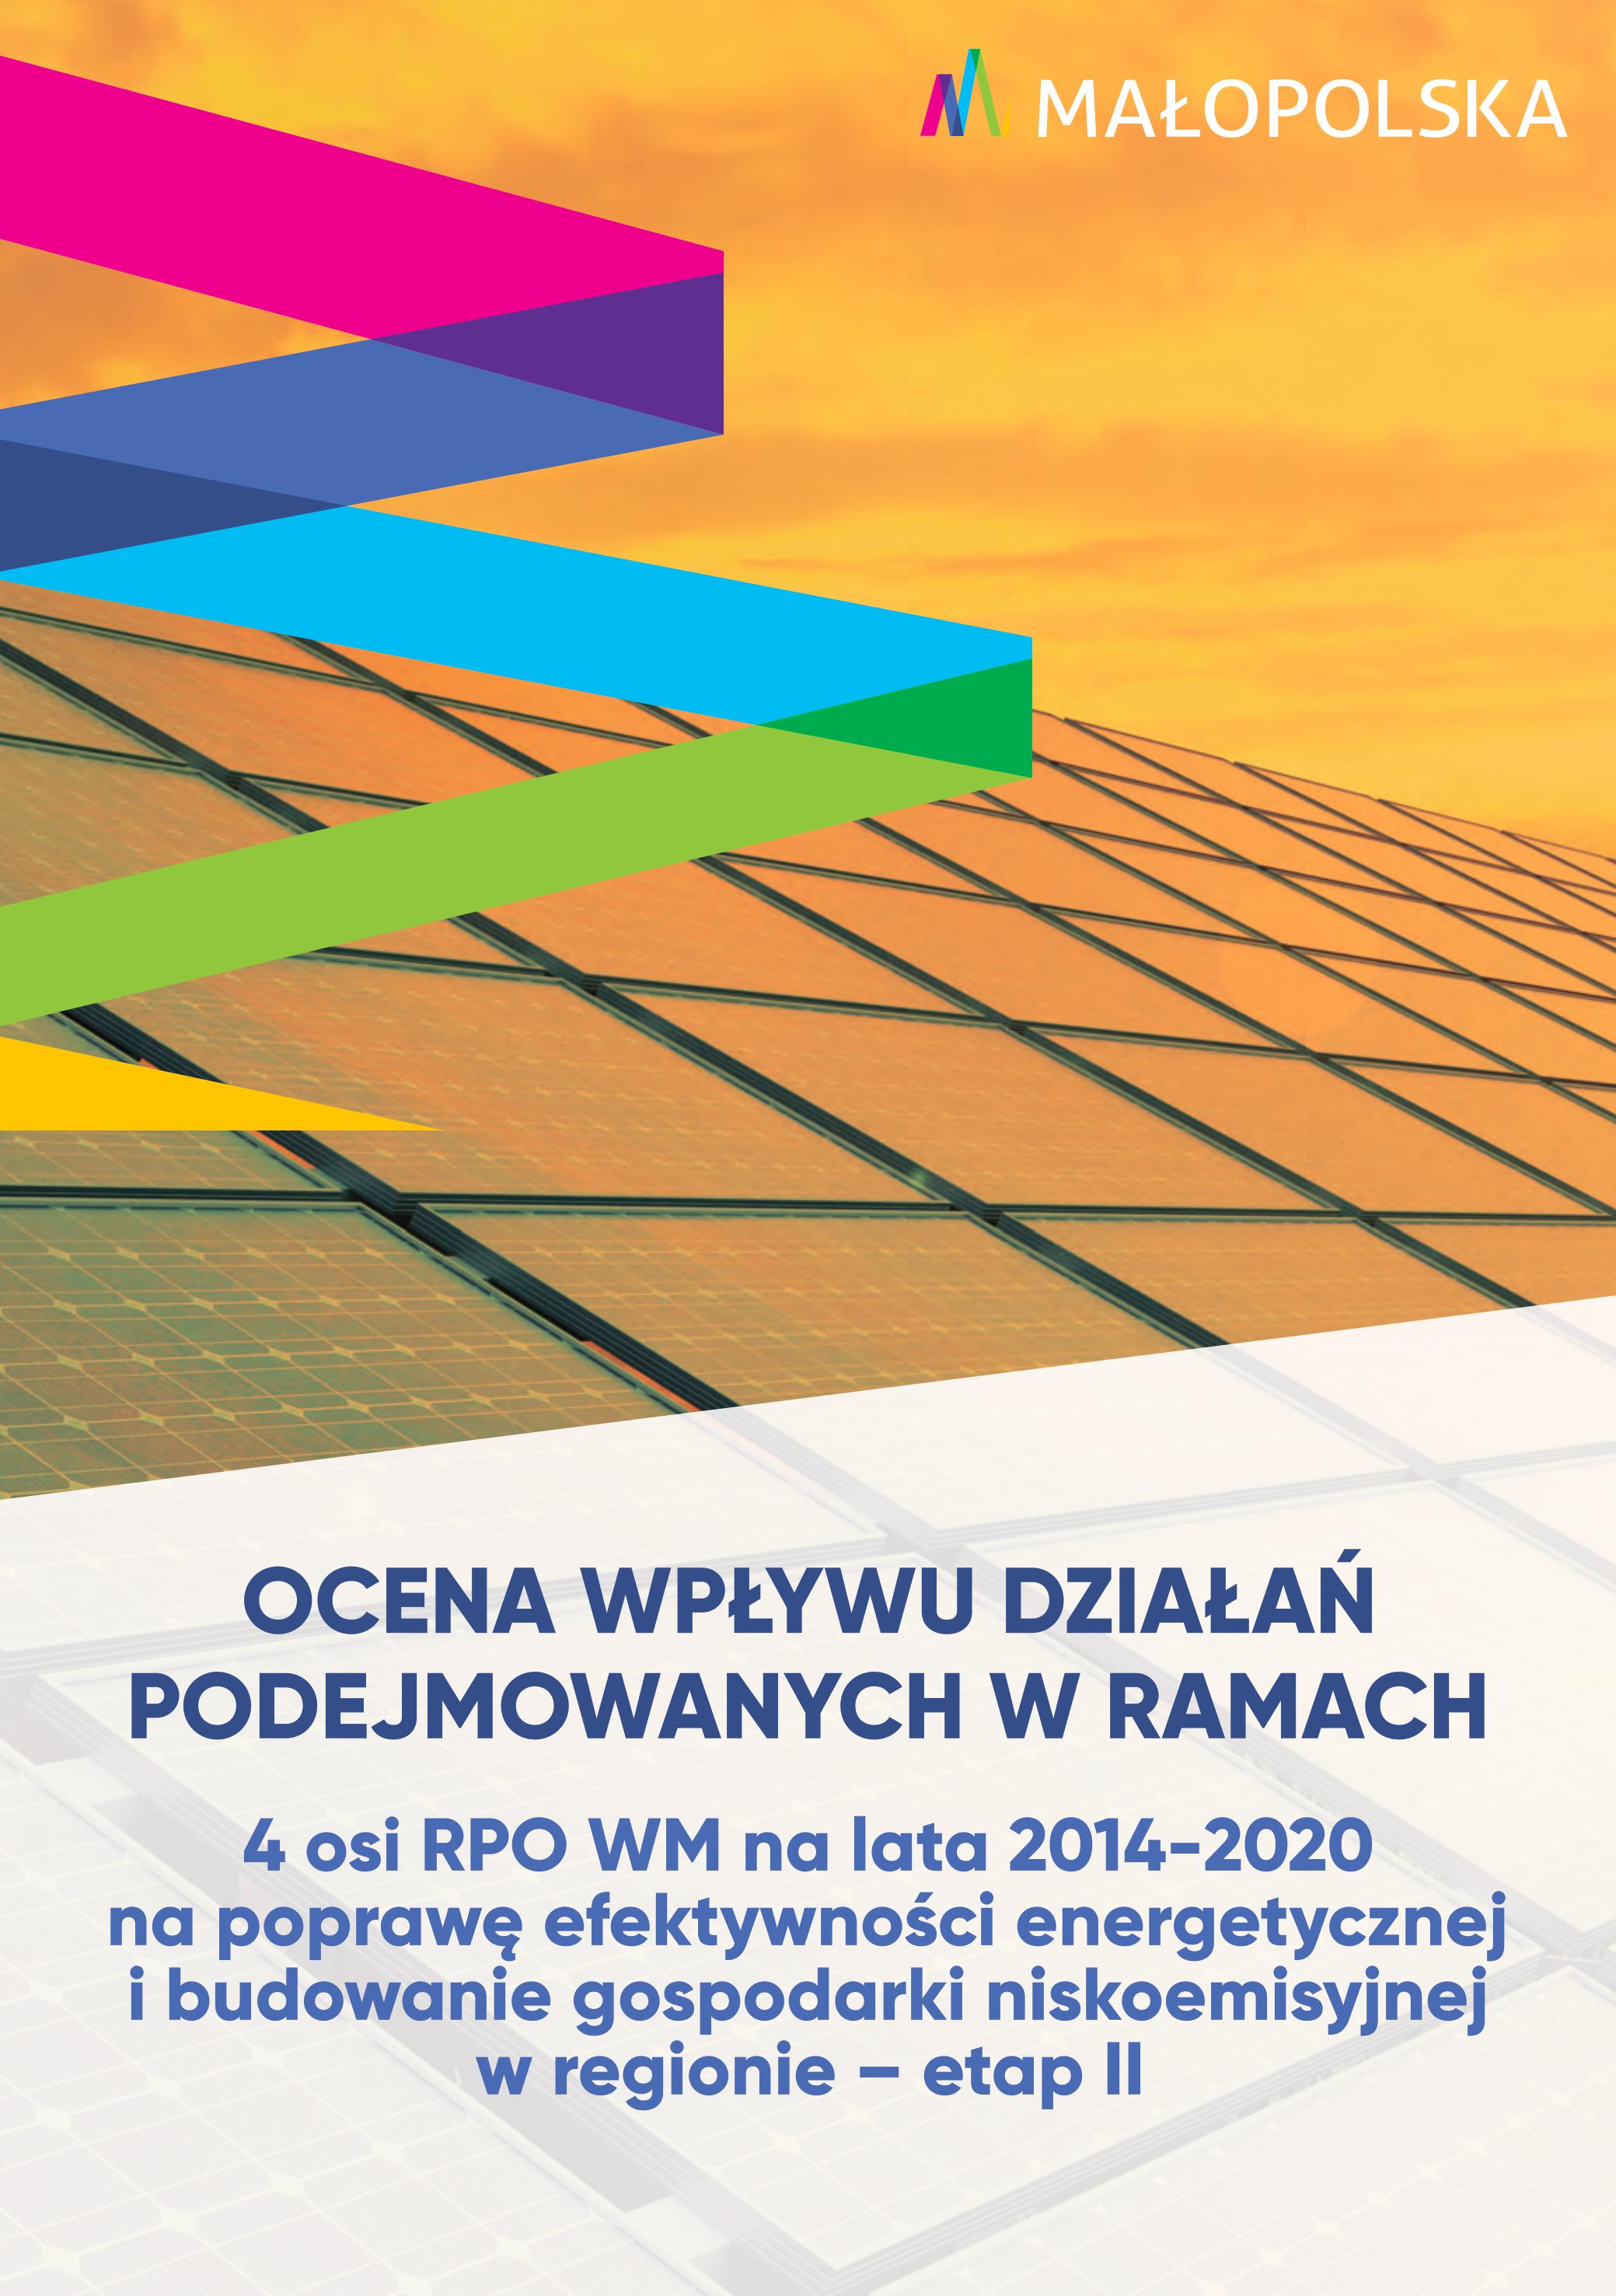 Ocena wpływu działań w ramach 4 osi RPO WM na lata 2014-2020